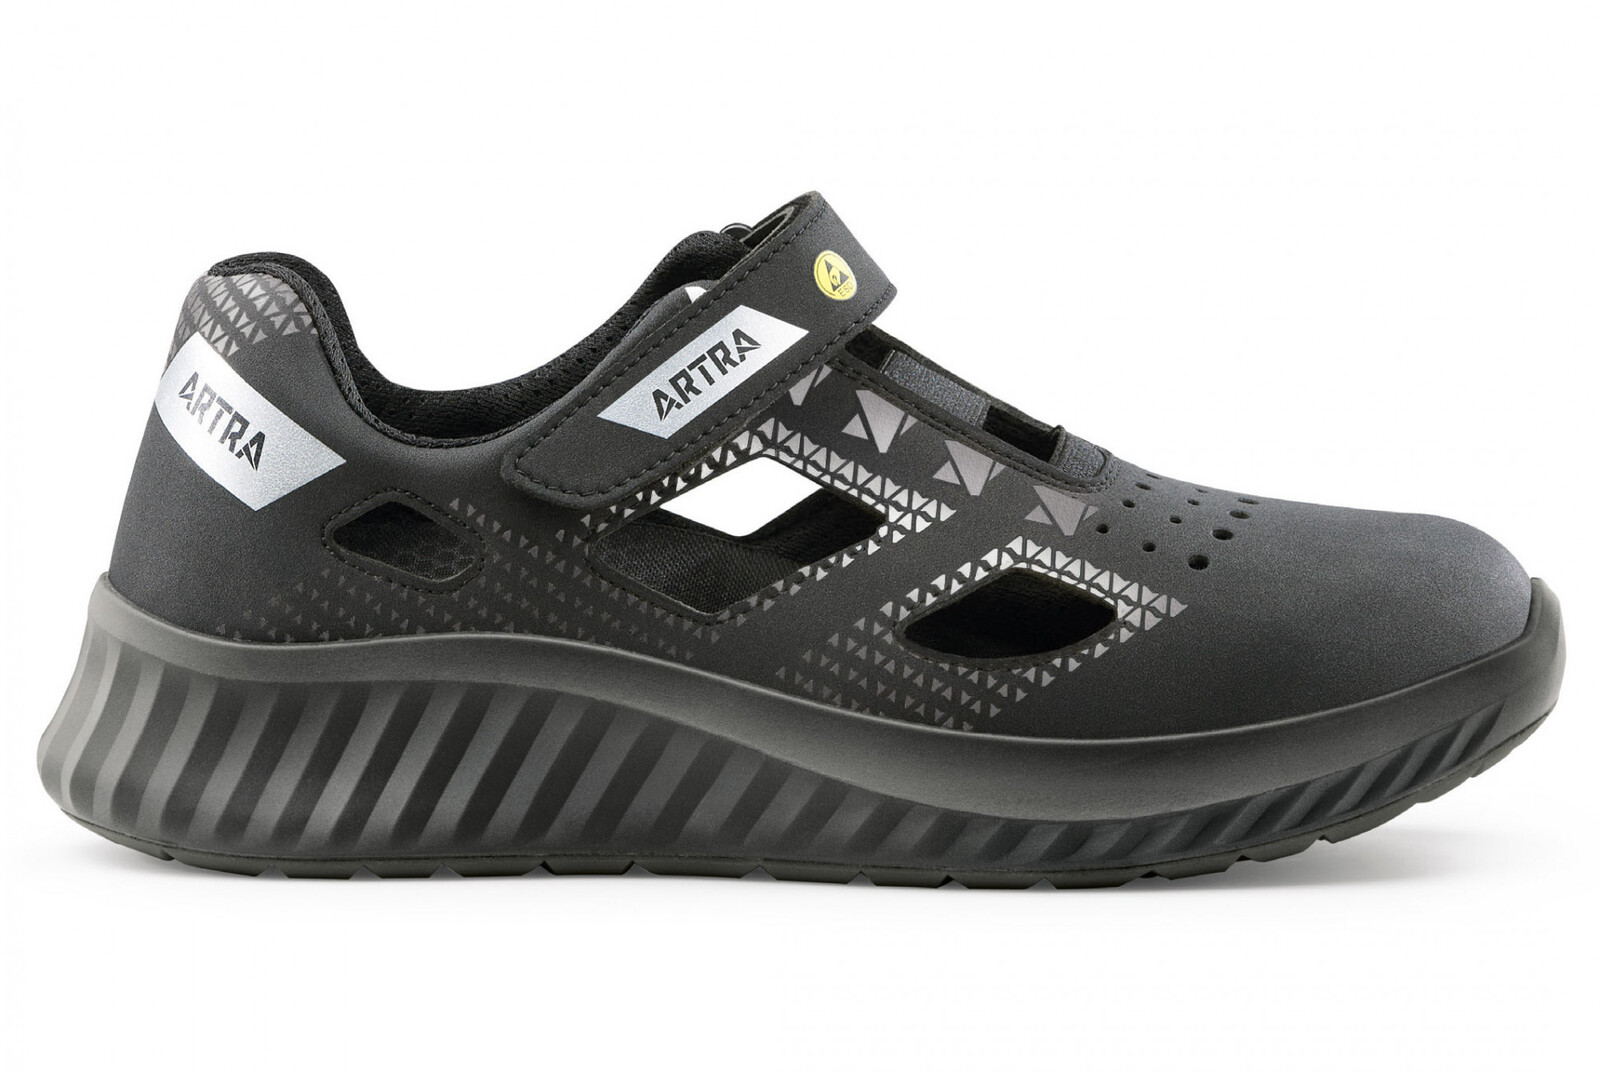 Bezpečnostné sandále Artra Arso 701 616560 S1P SRC ESD - veľkosť: 39, farba: čierna/sivá